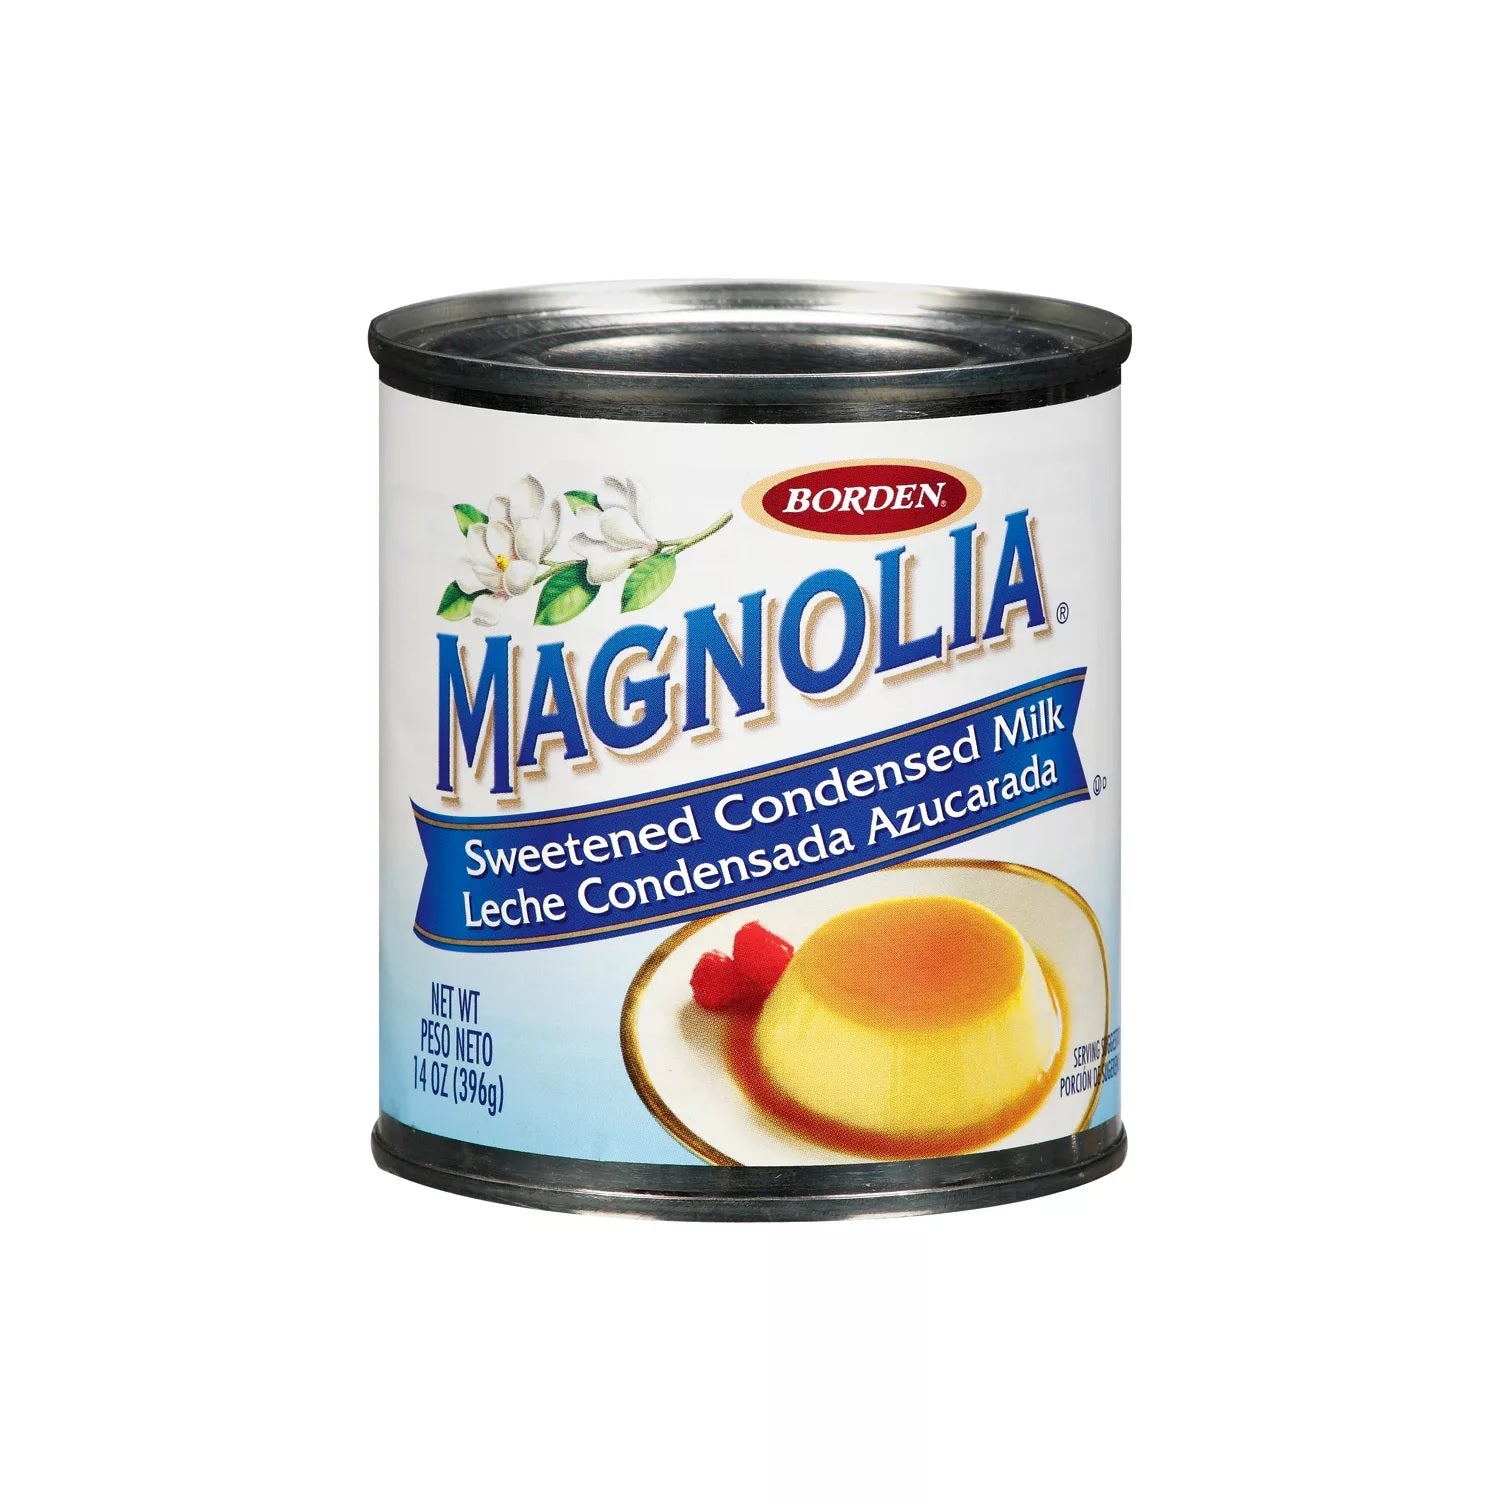 Magnolia Sweetened Condensed Milk - 14oz/6pk